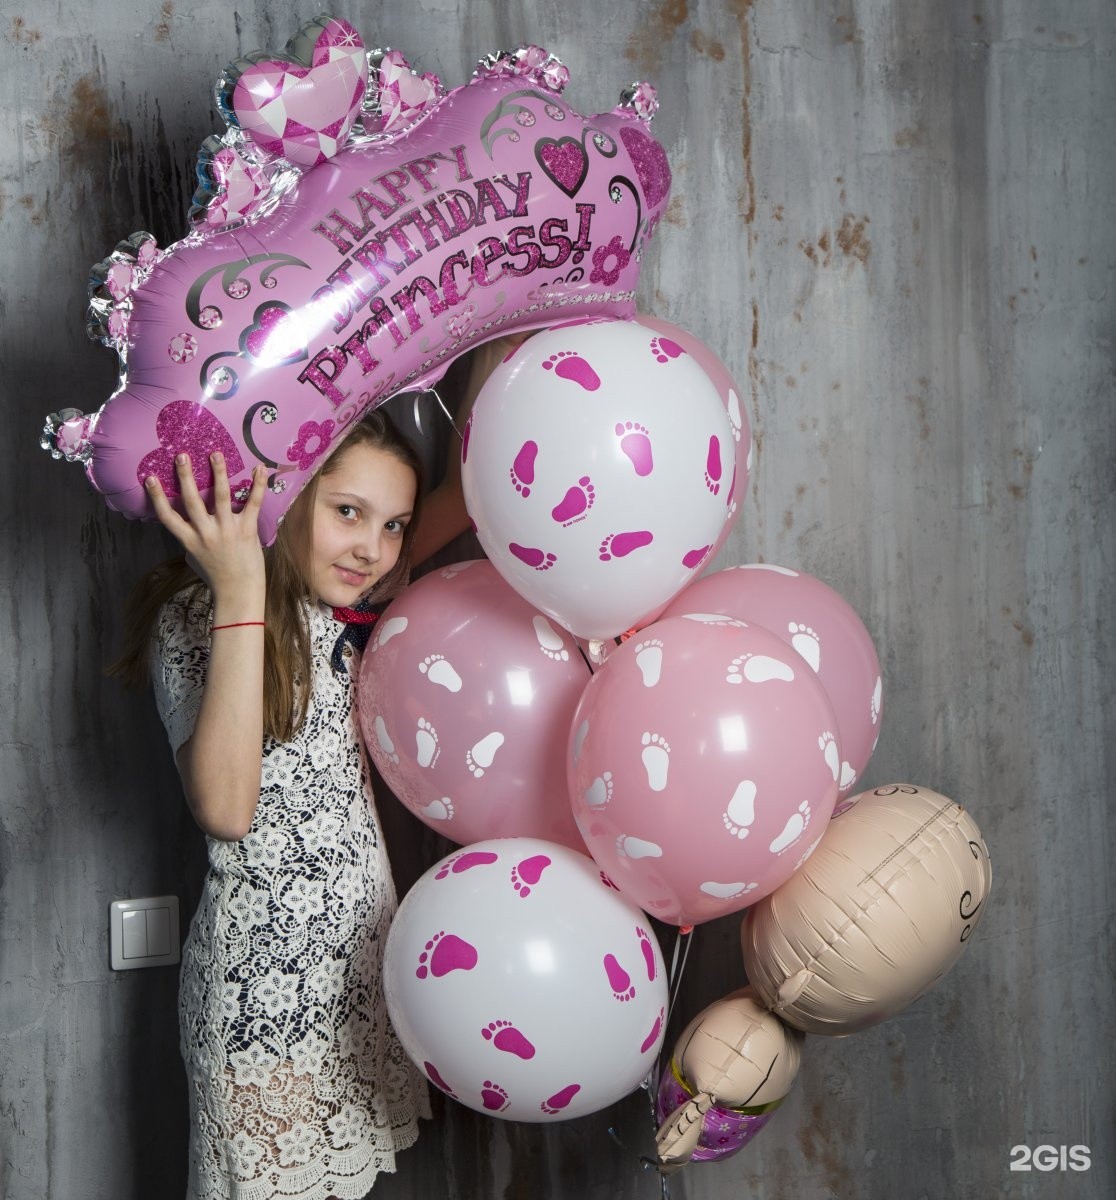 шары для день рождения девочки